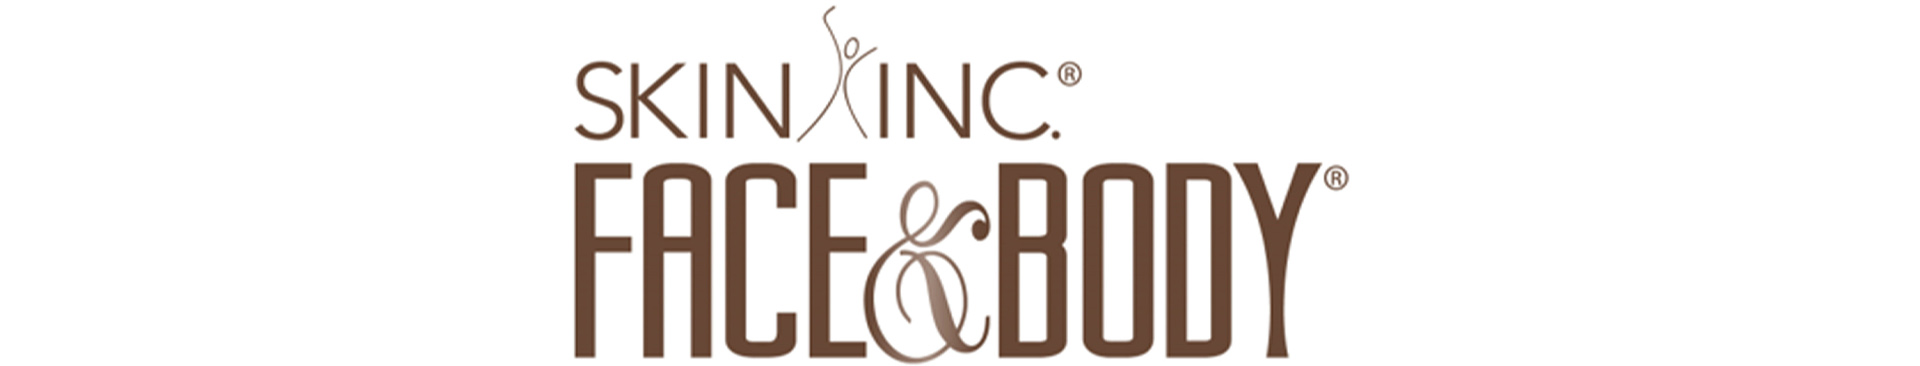 logo 4IECSCN-New-York copy